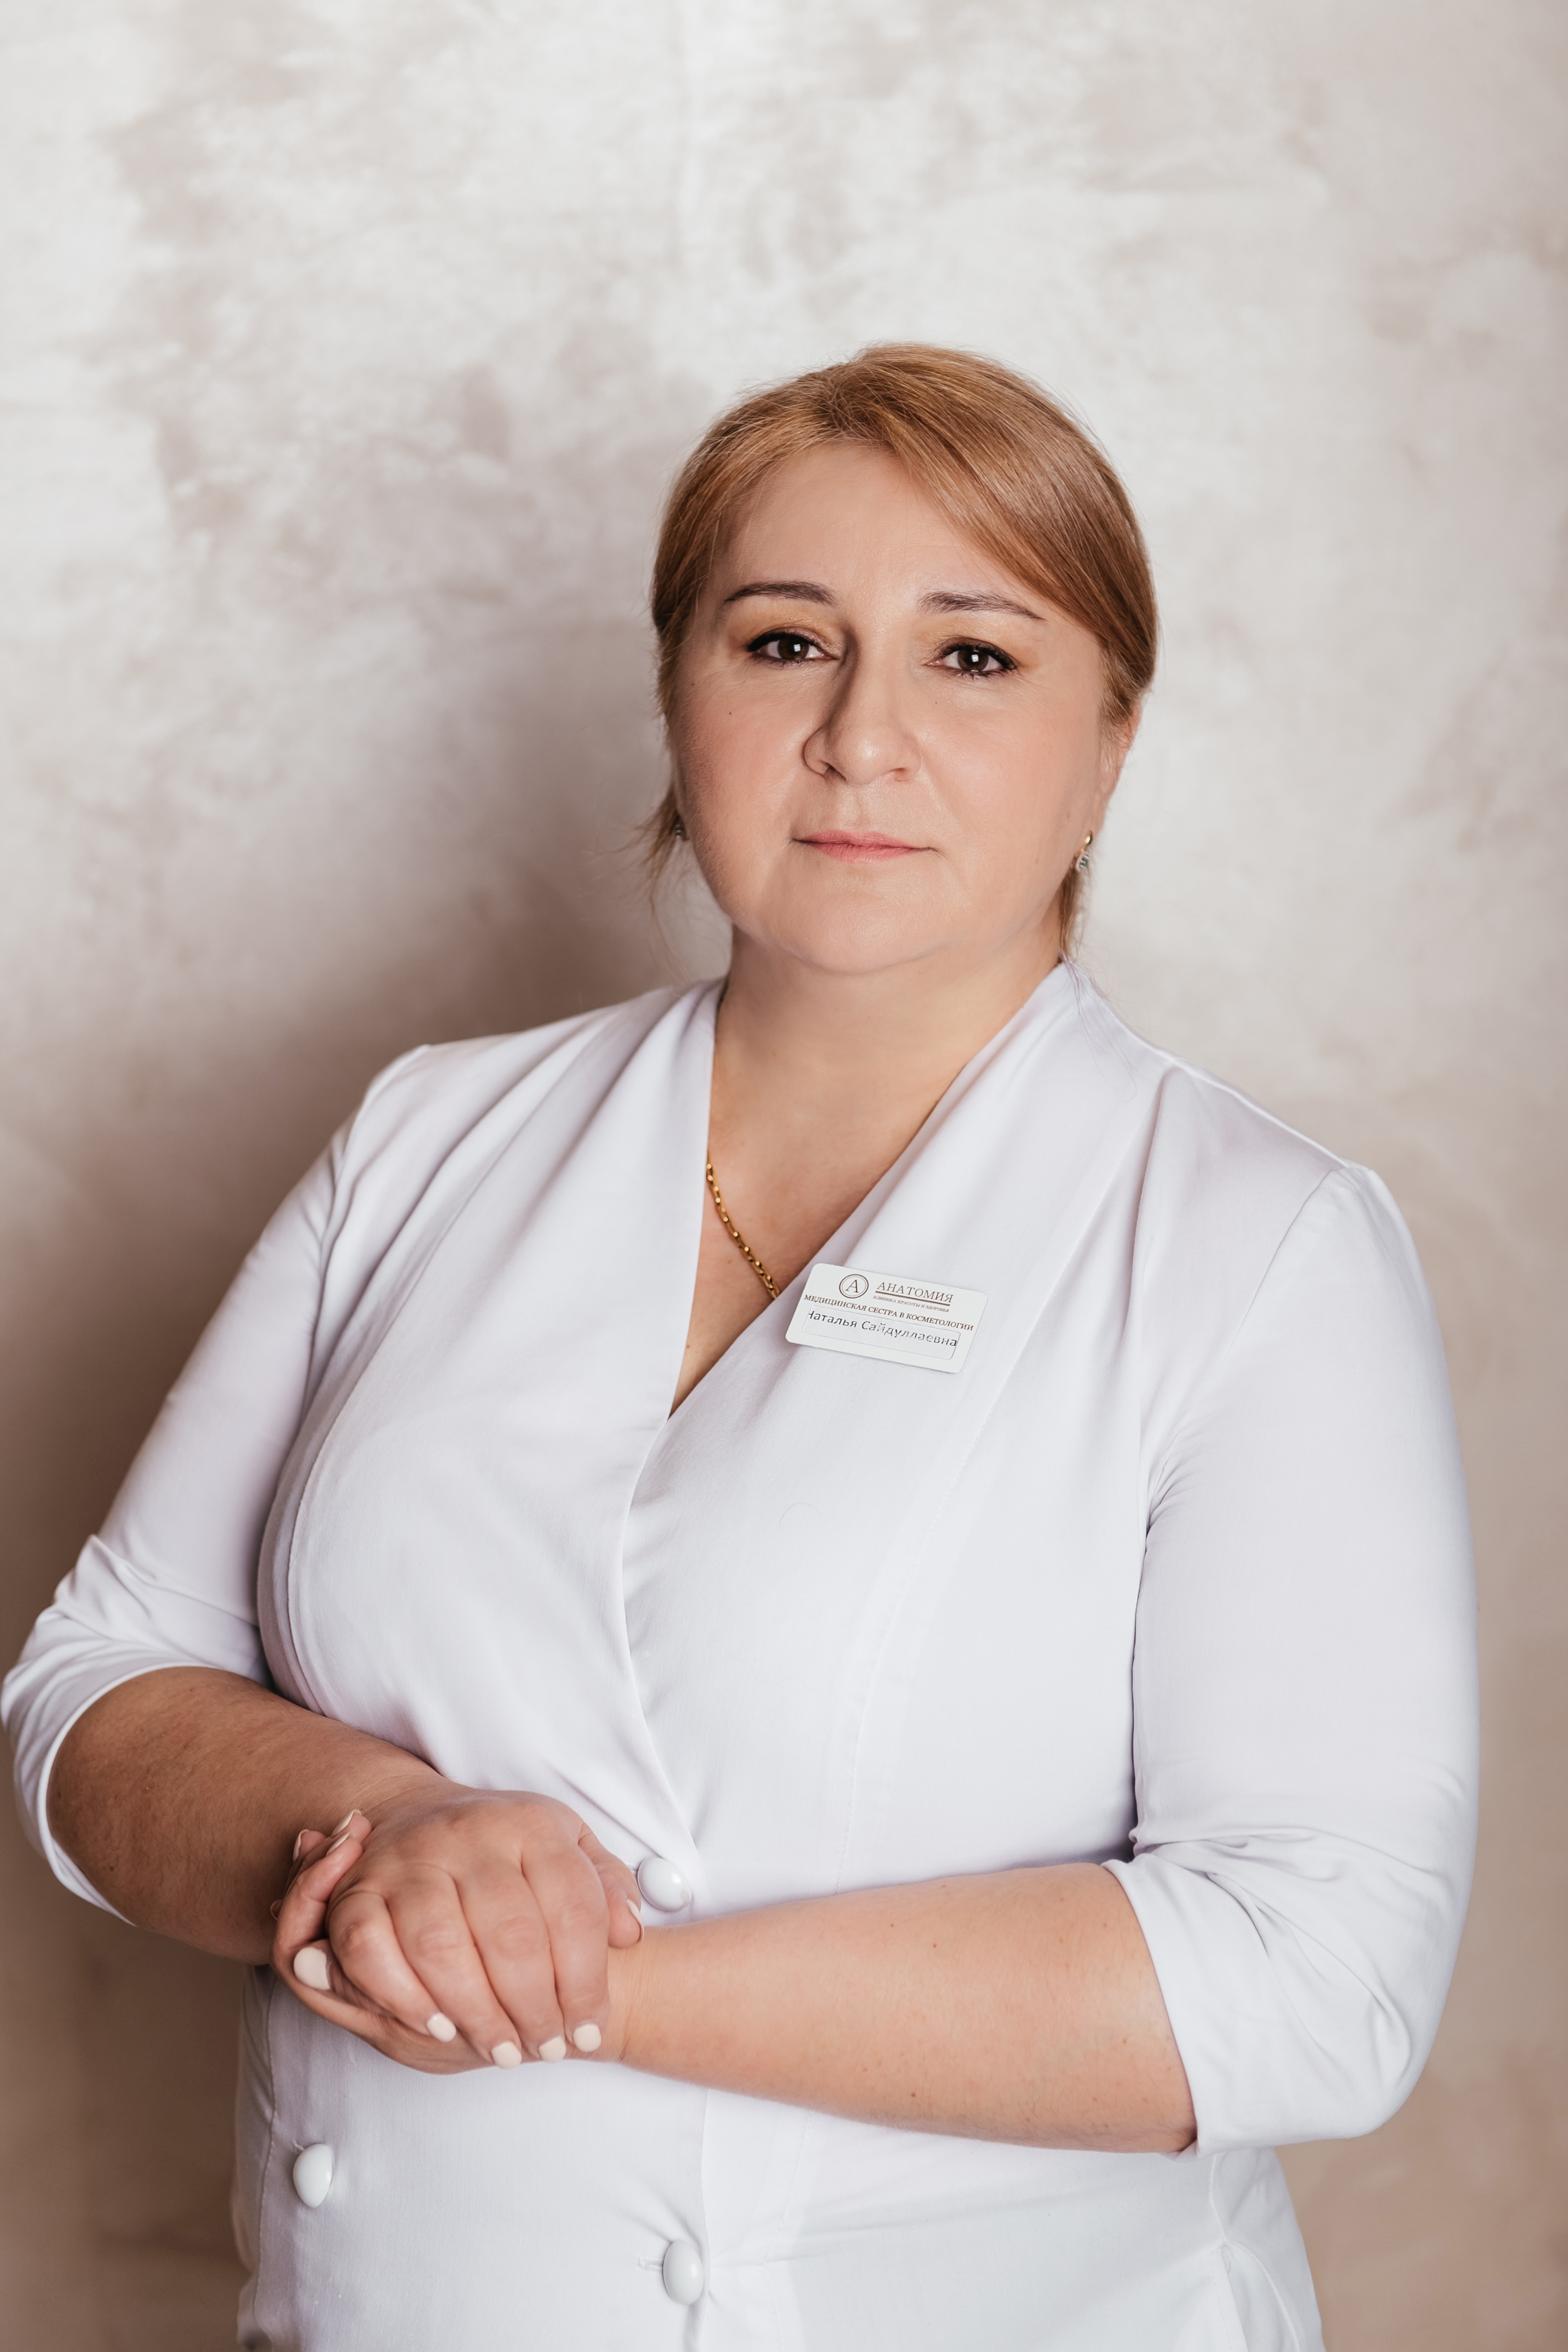 Специалист лазерной эпиляции клиники "Анатомия" на Бауманской, Саралинова Наталья Сайдуллаевна